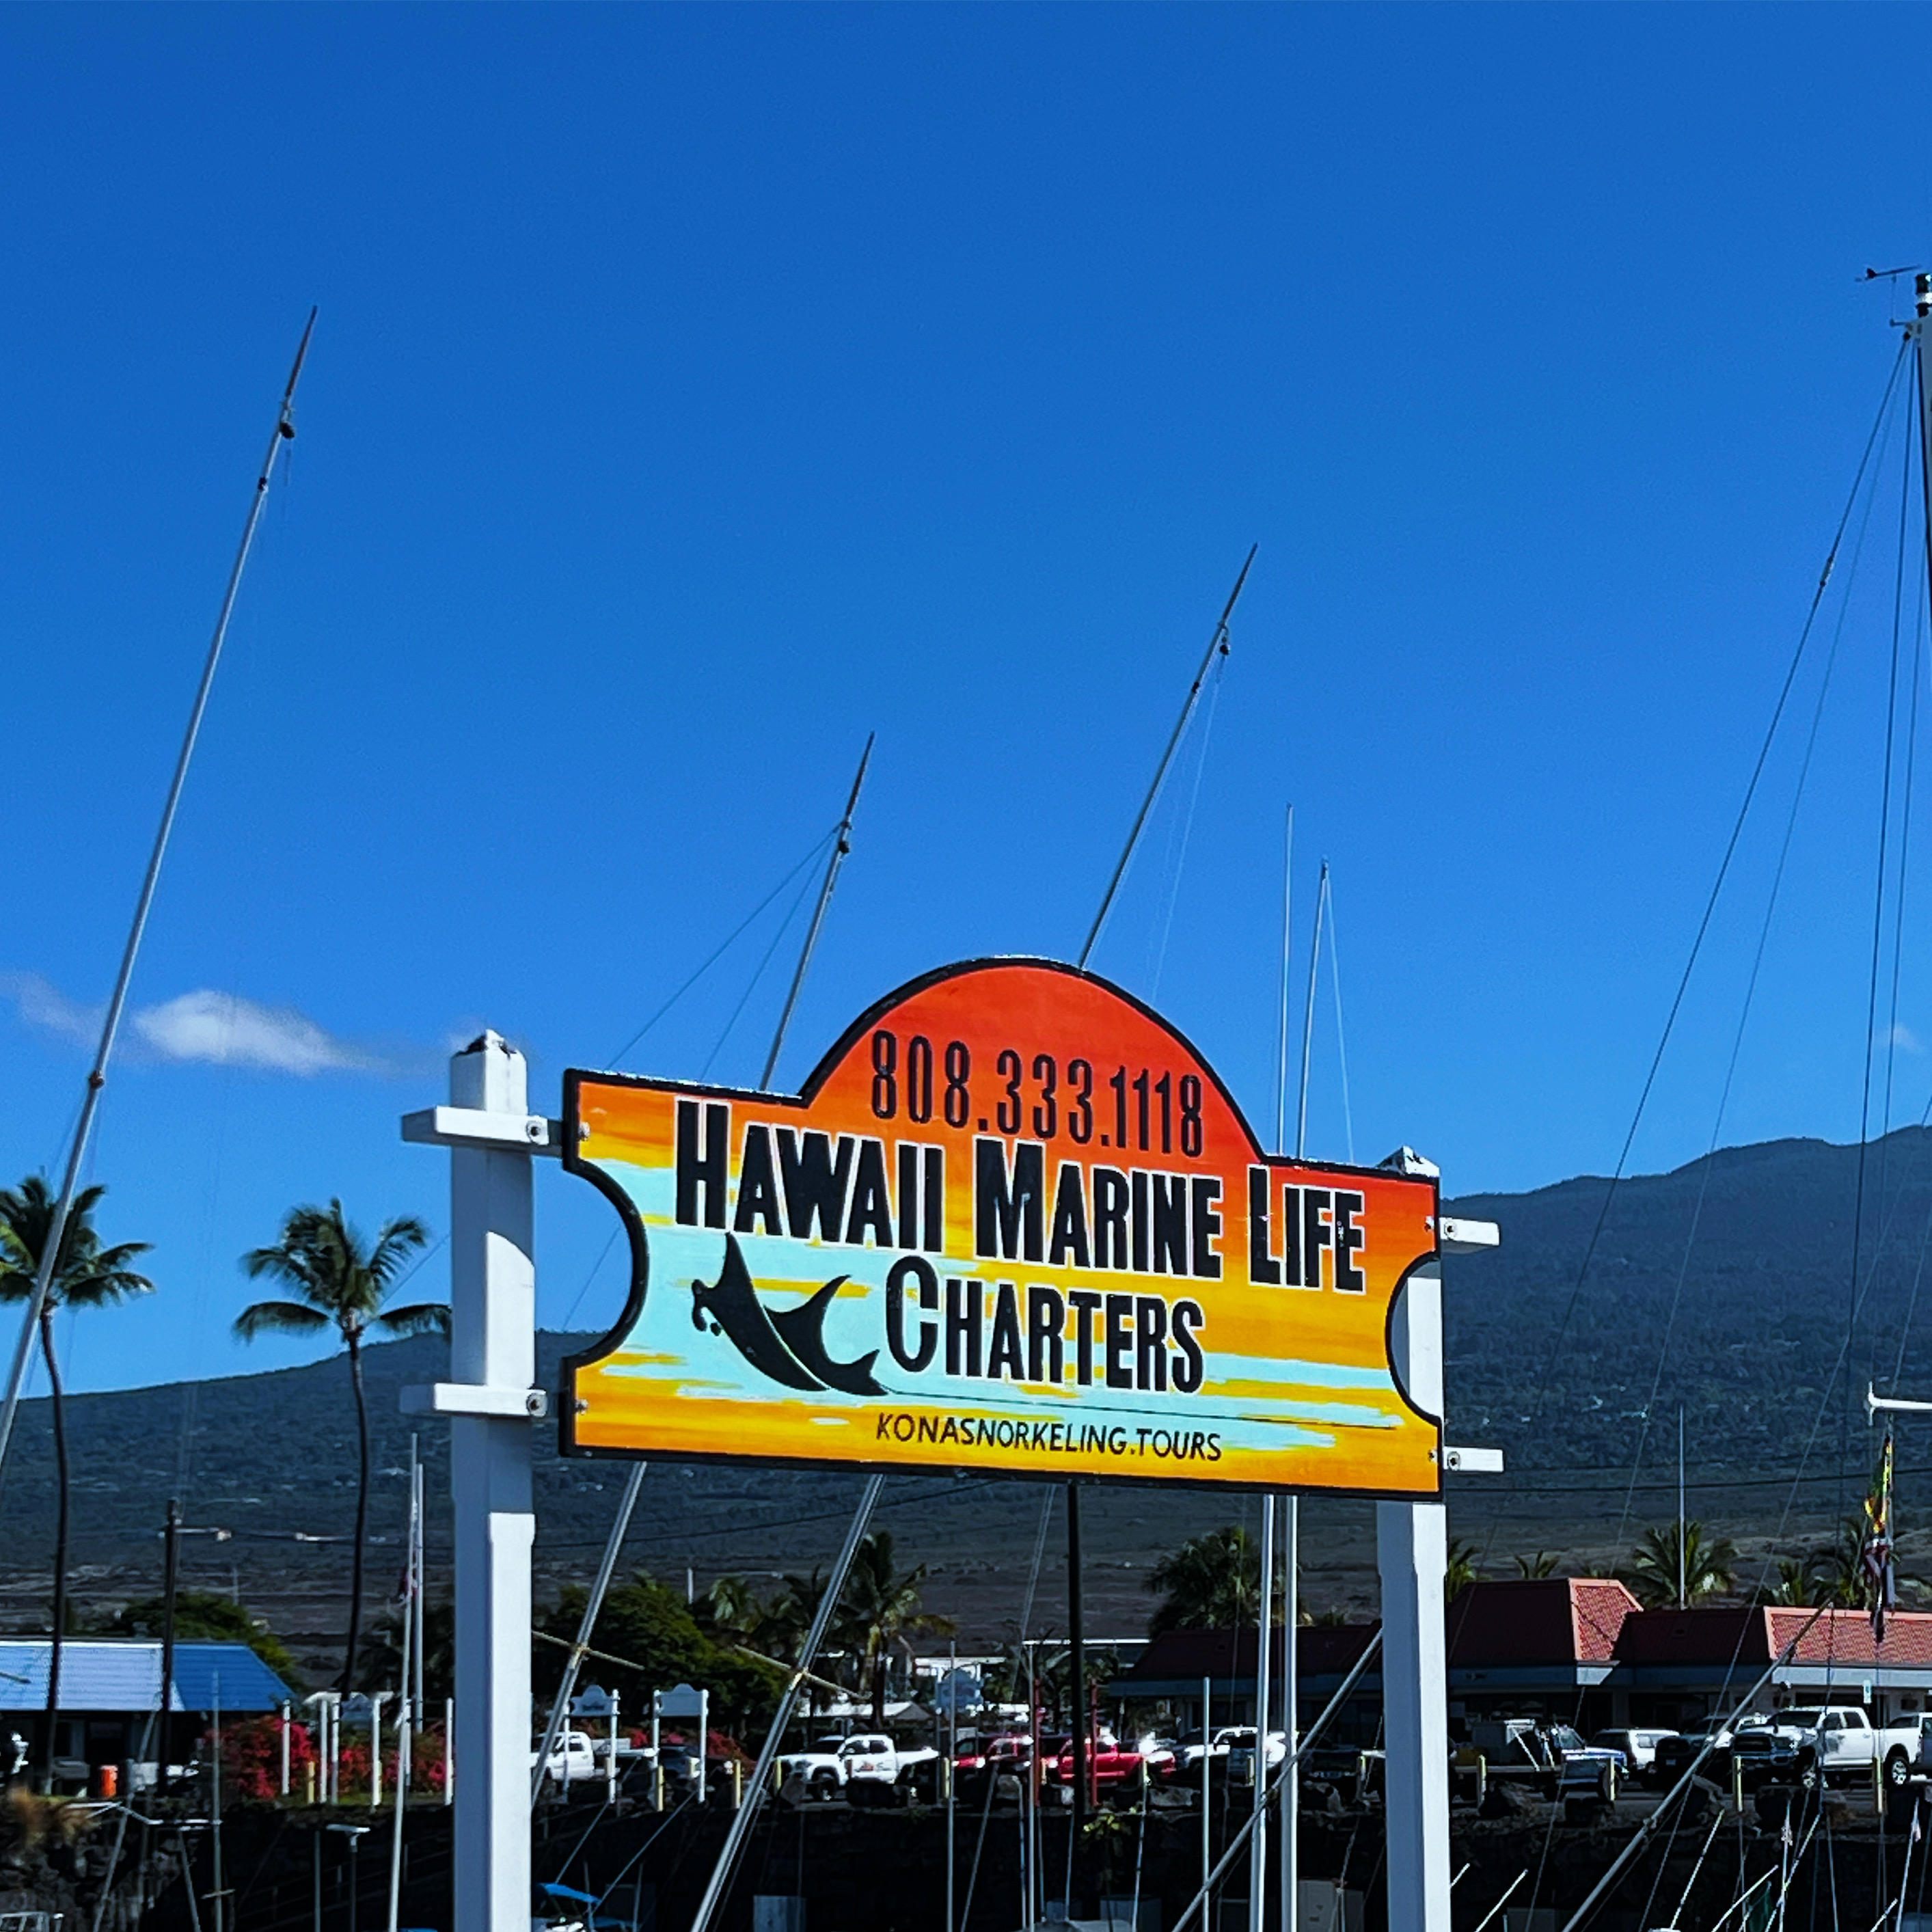 Hawaii Marine Life Charters - Kailua Kona, HI 96740 - (808)333-1118 | ShowMeLocal.com